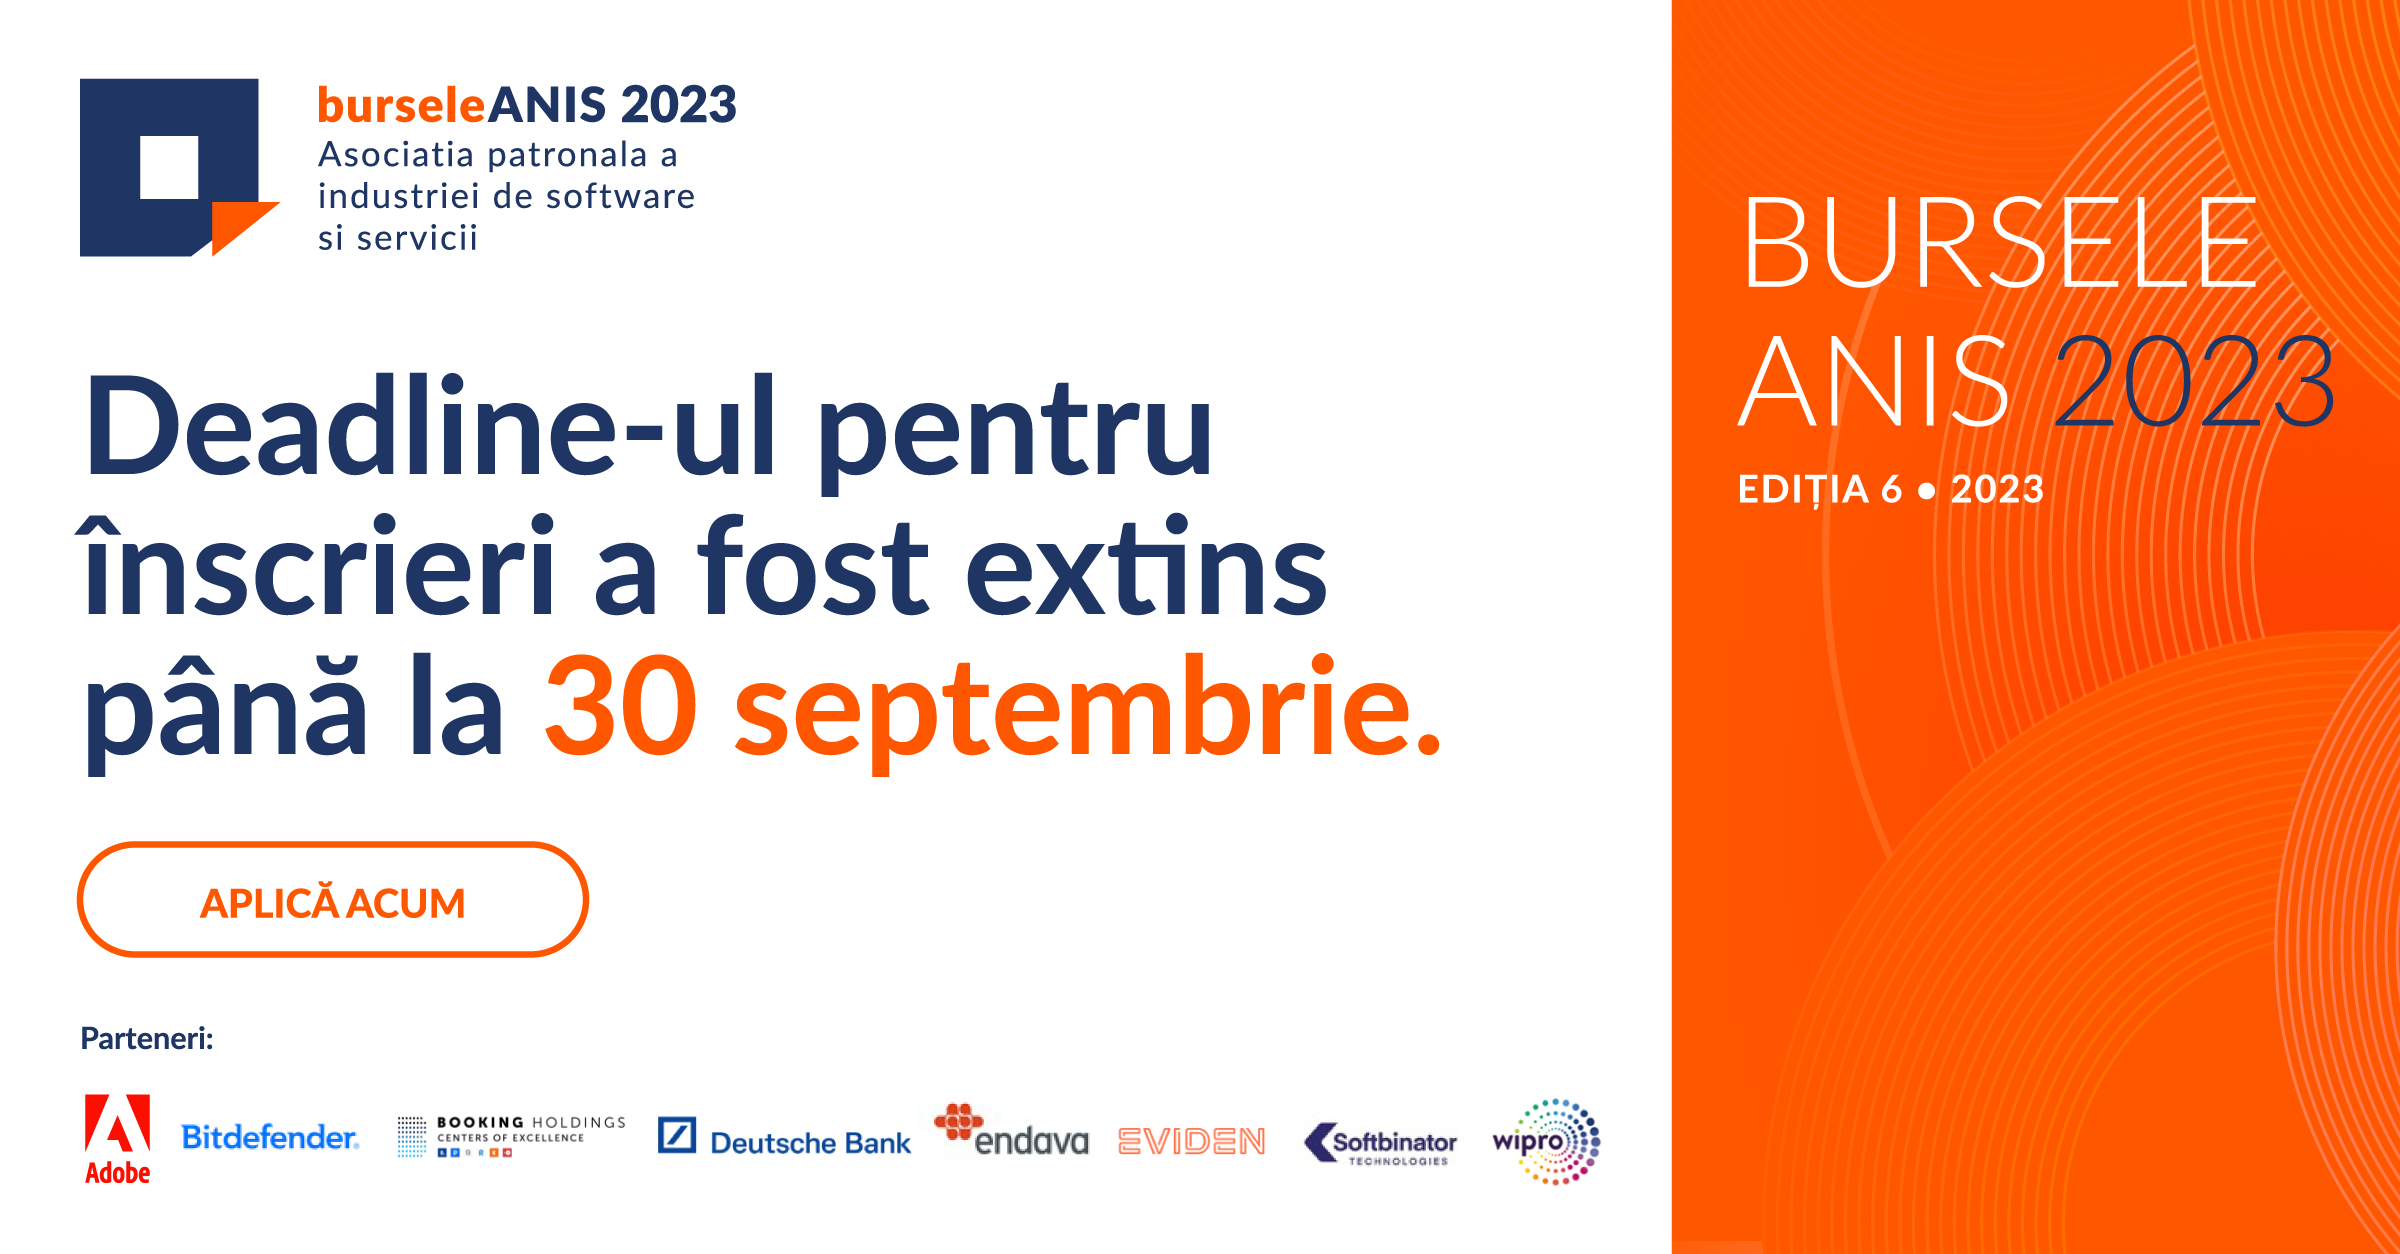 Bursele ANIS 2023: Prelungim termenul limită pentru înscriere până pe 30 septembrie 2023.